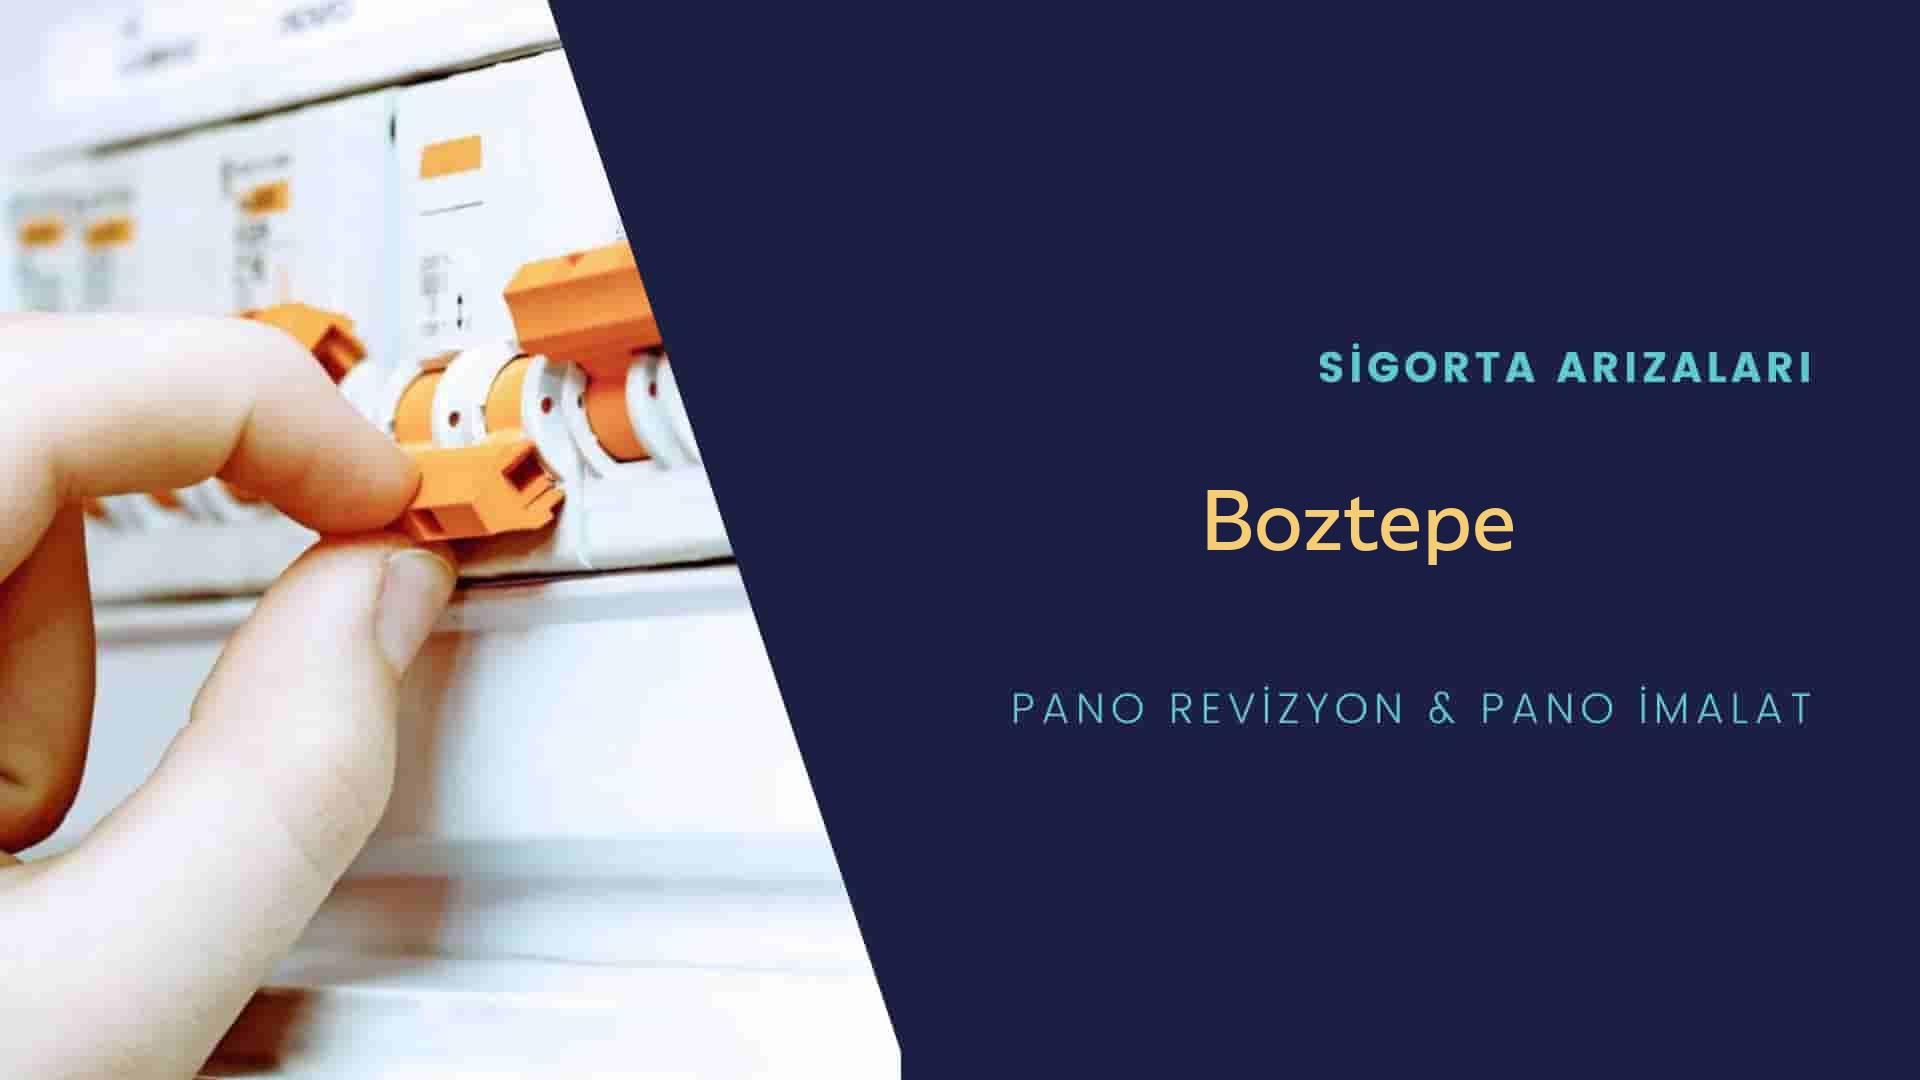 Boztepe Sigorta Arızaları İçin Profesyonel Elektrikçi ustalarımızı dilediğiniz zaman arayabilir talepte bulunabilirsiniz.